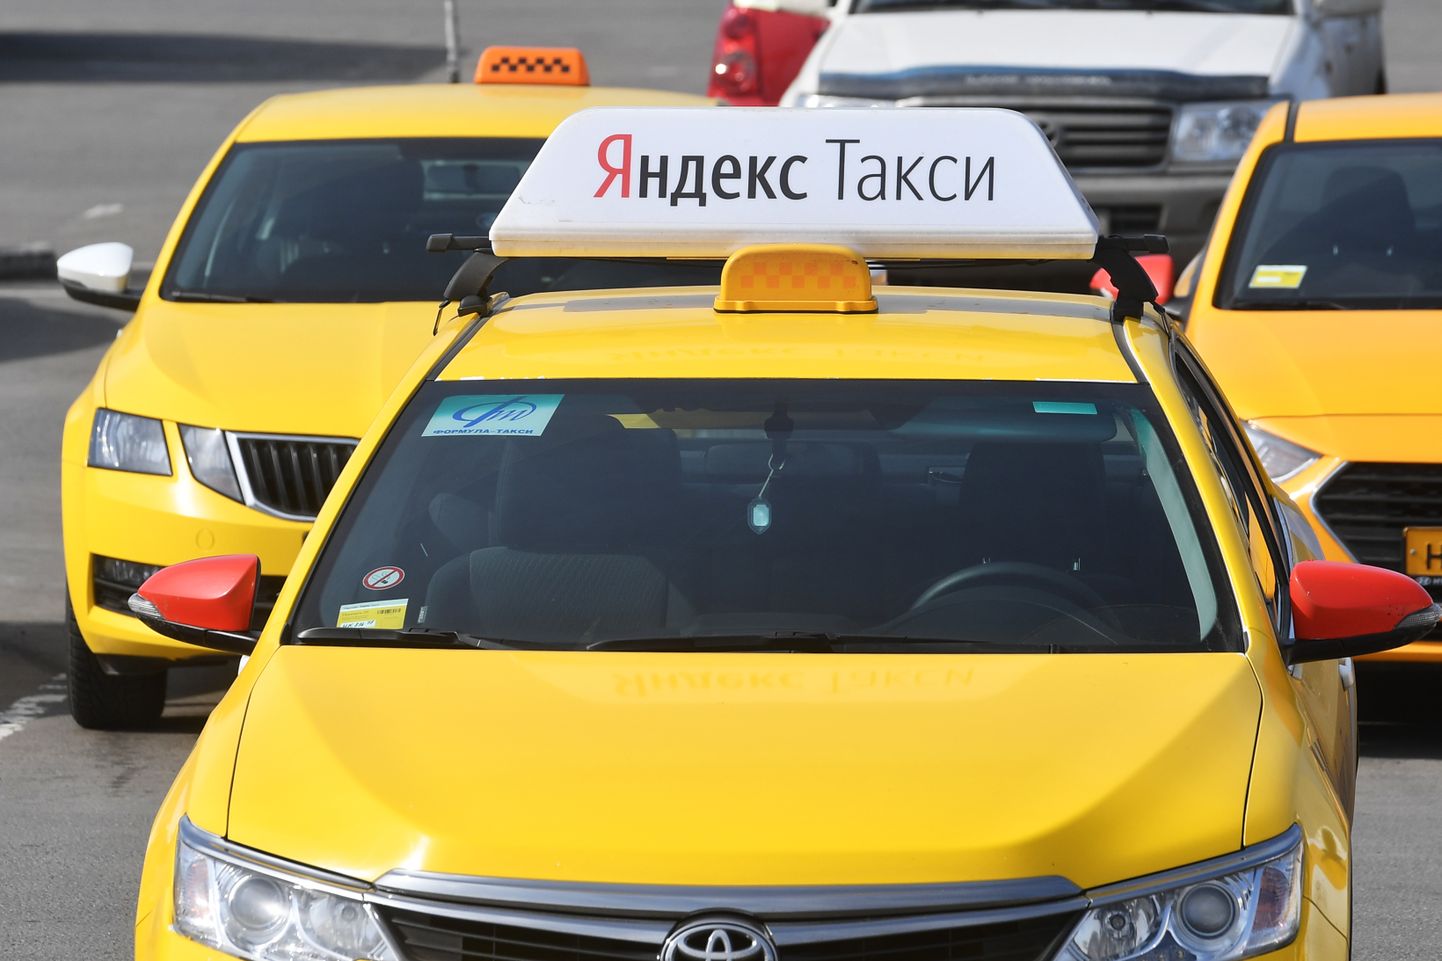 Yandex Taxi.